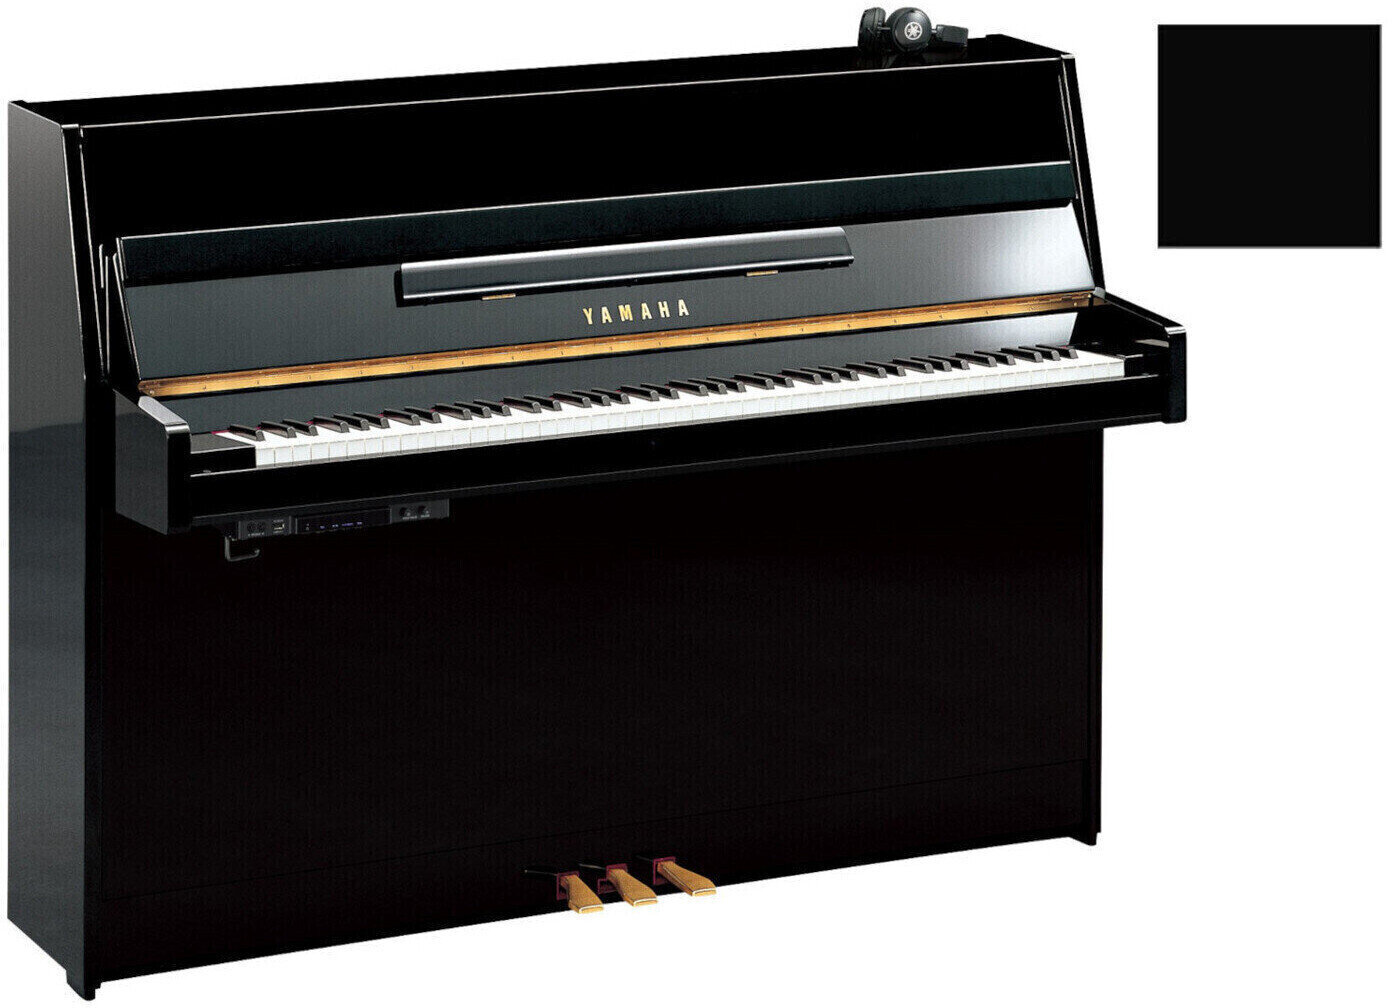 Klavier, Piano Yamaha B1 SC2 Silent Piano Polished Ebony with Chrome